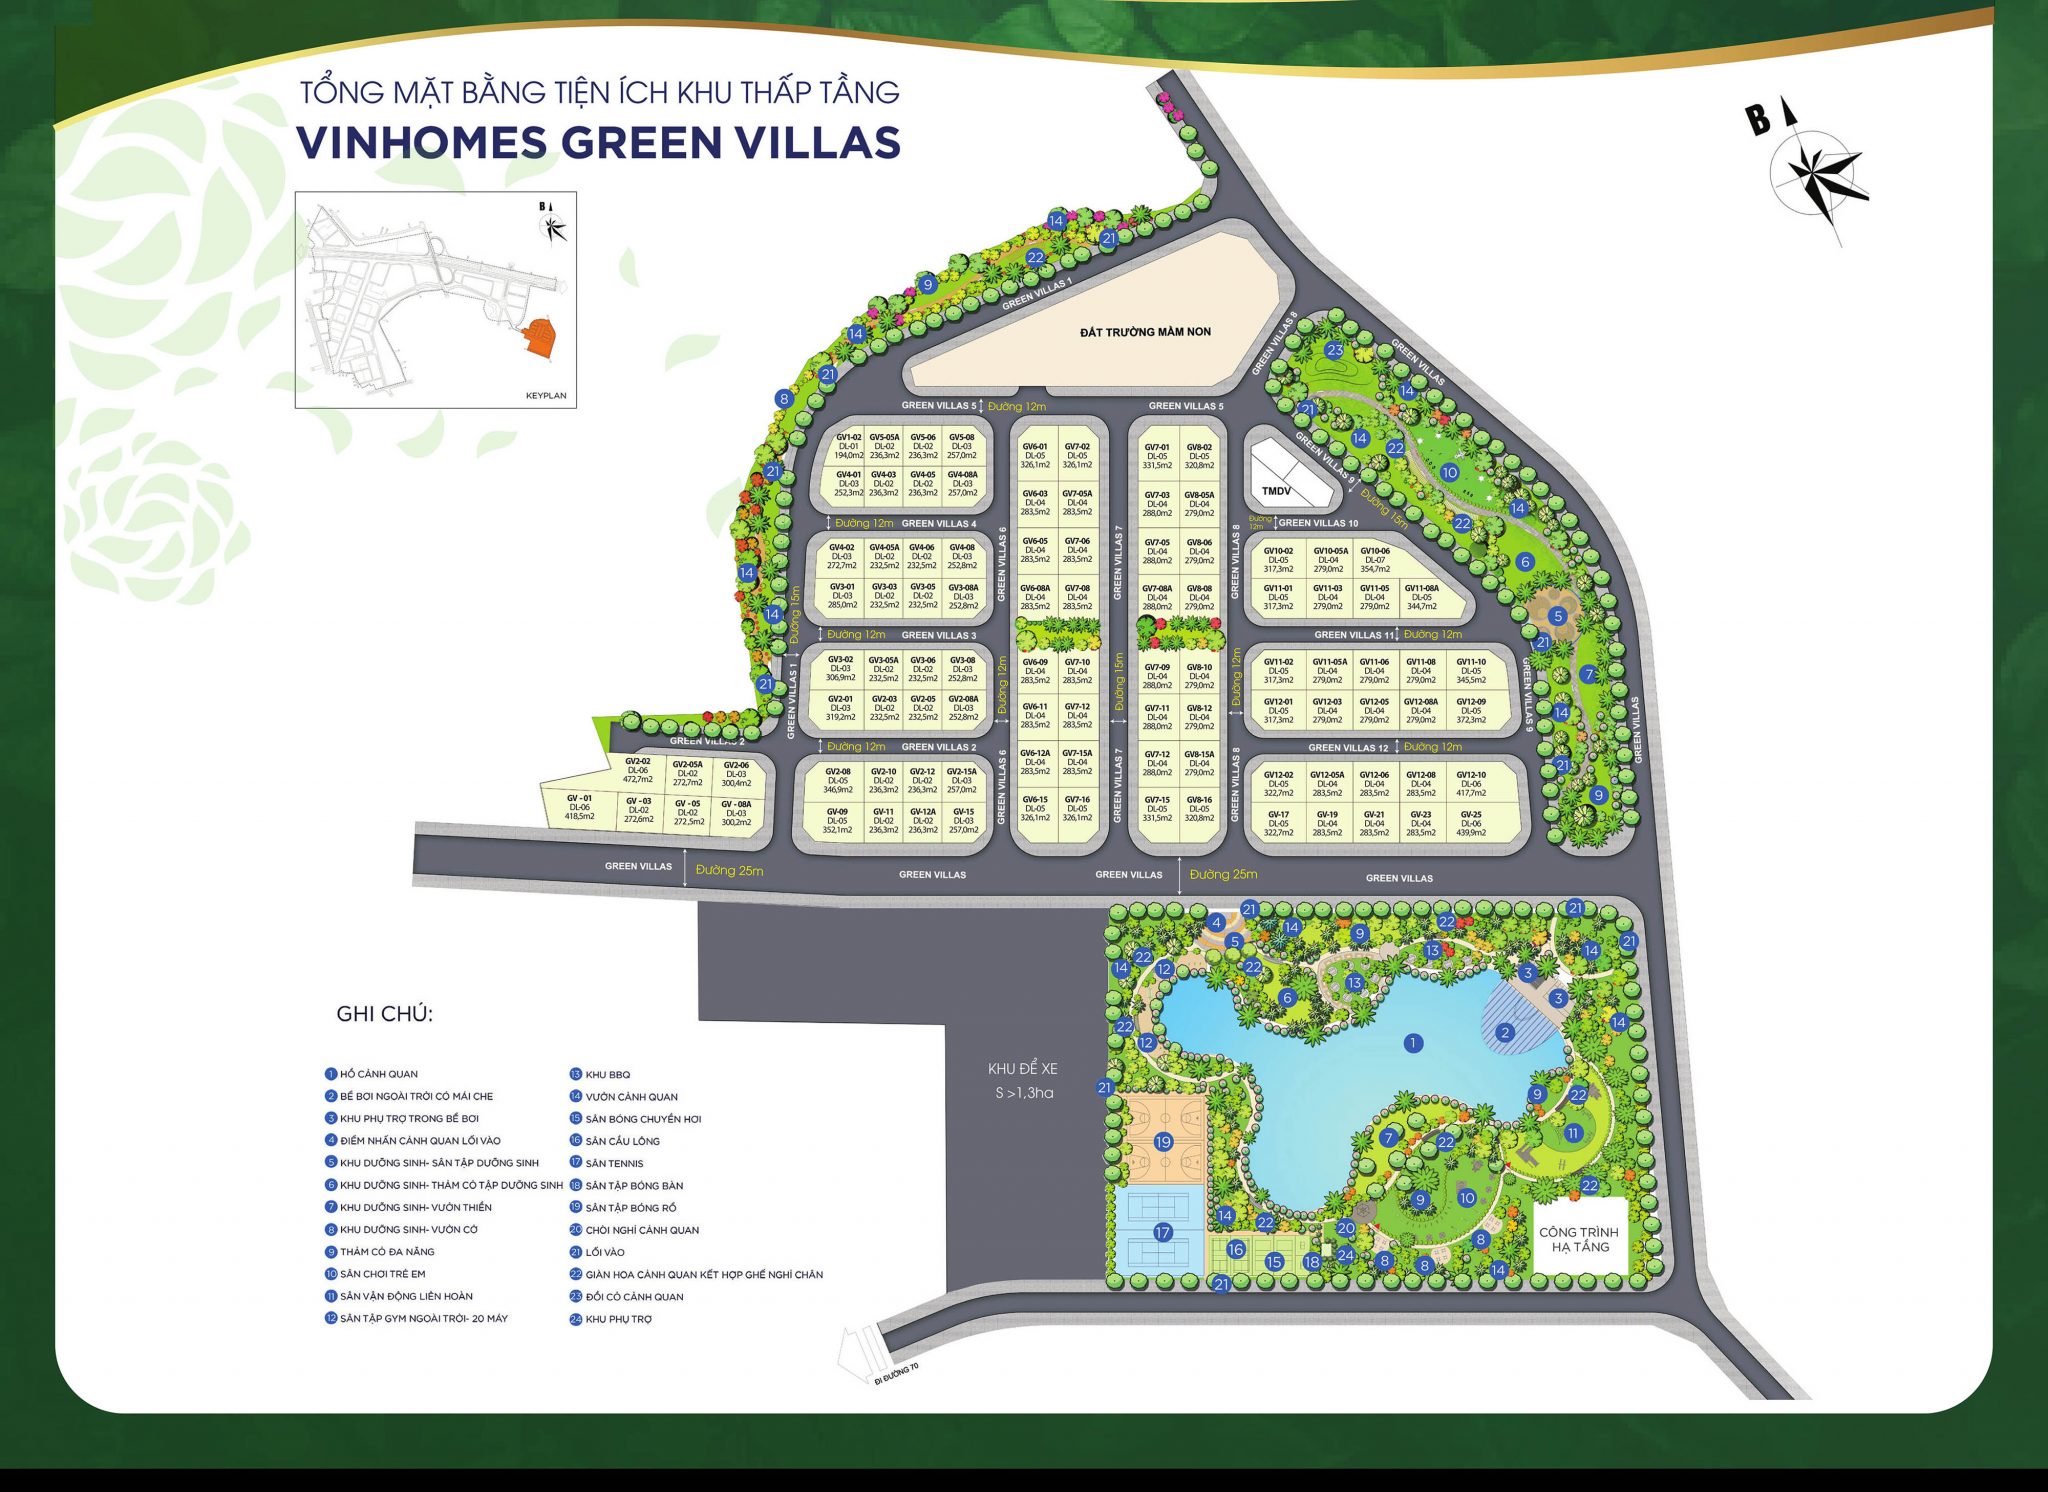 Mặt bằng dự án Vinhomes Green Villas Tây Mỗ